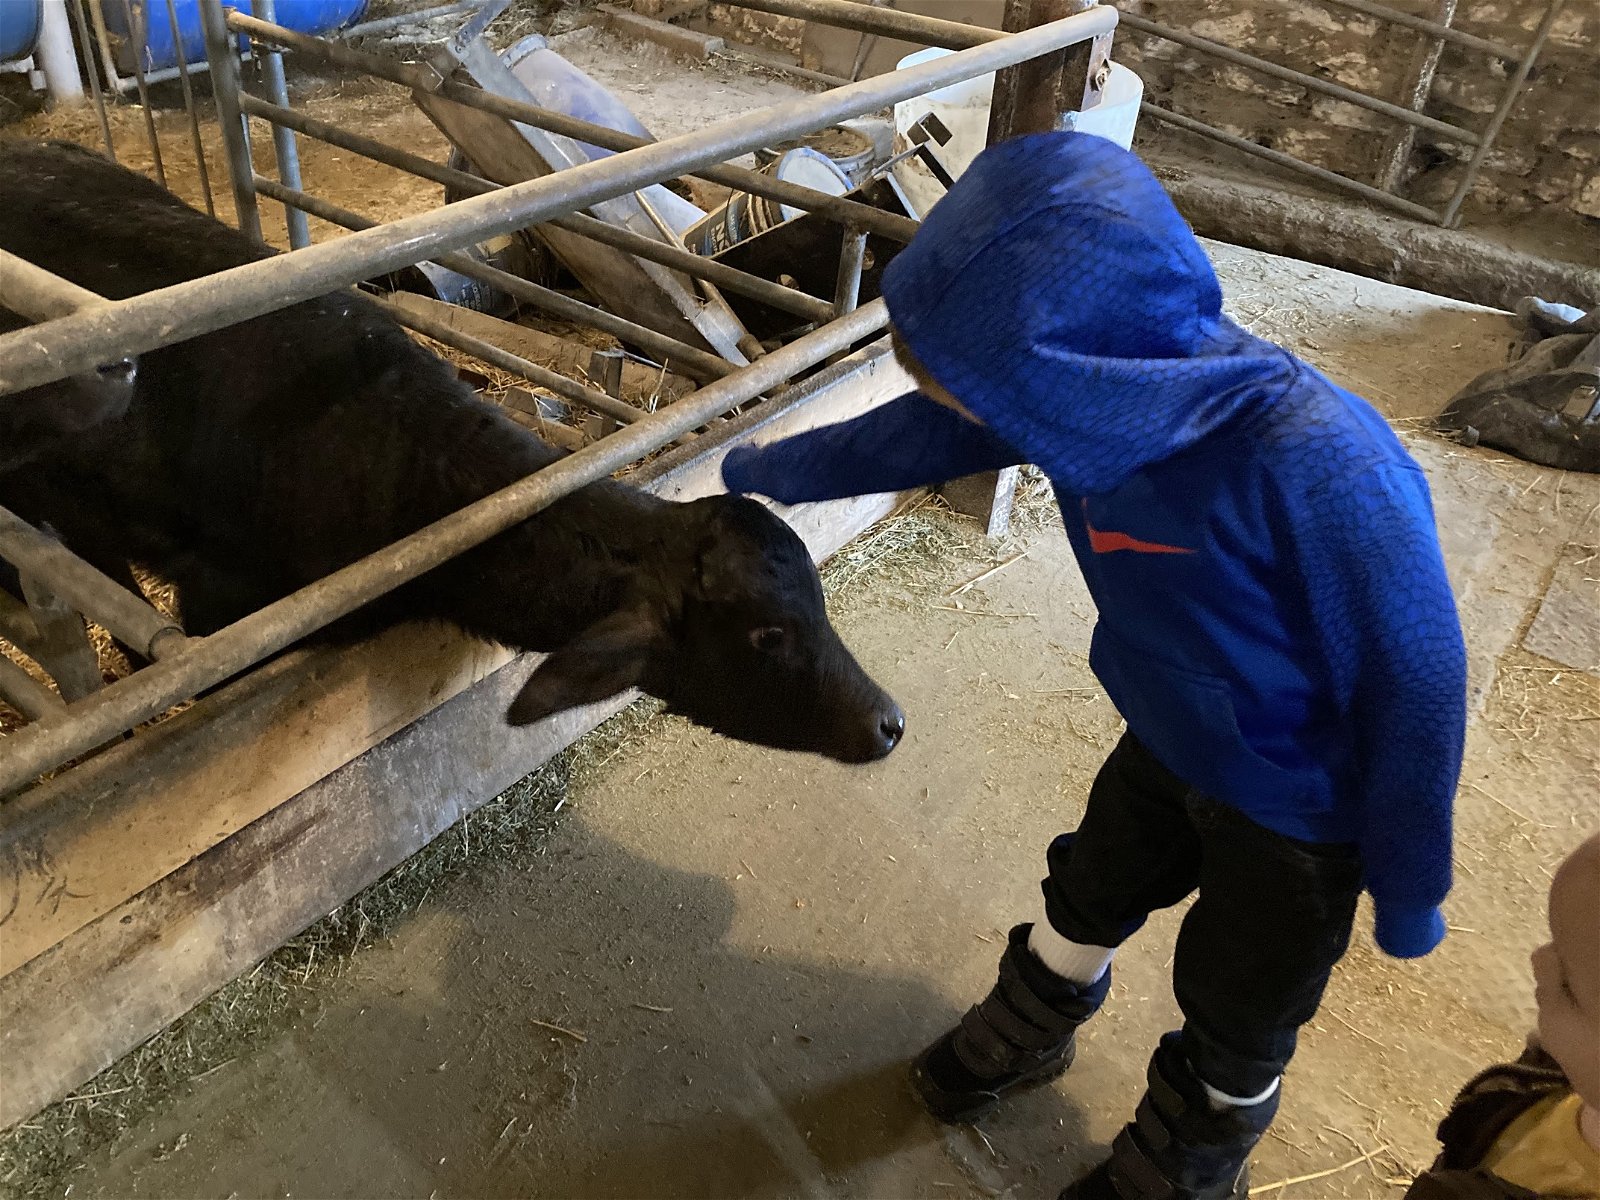 Water buffalo calves in barn